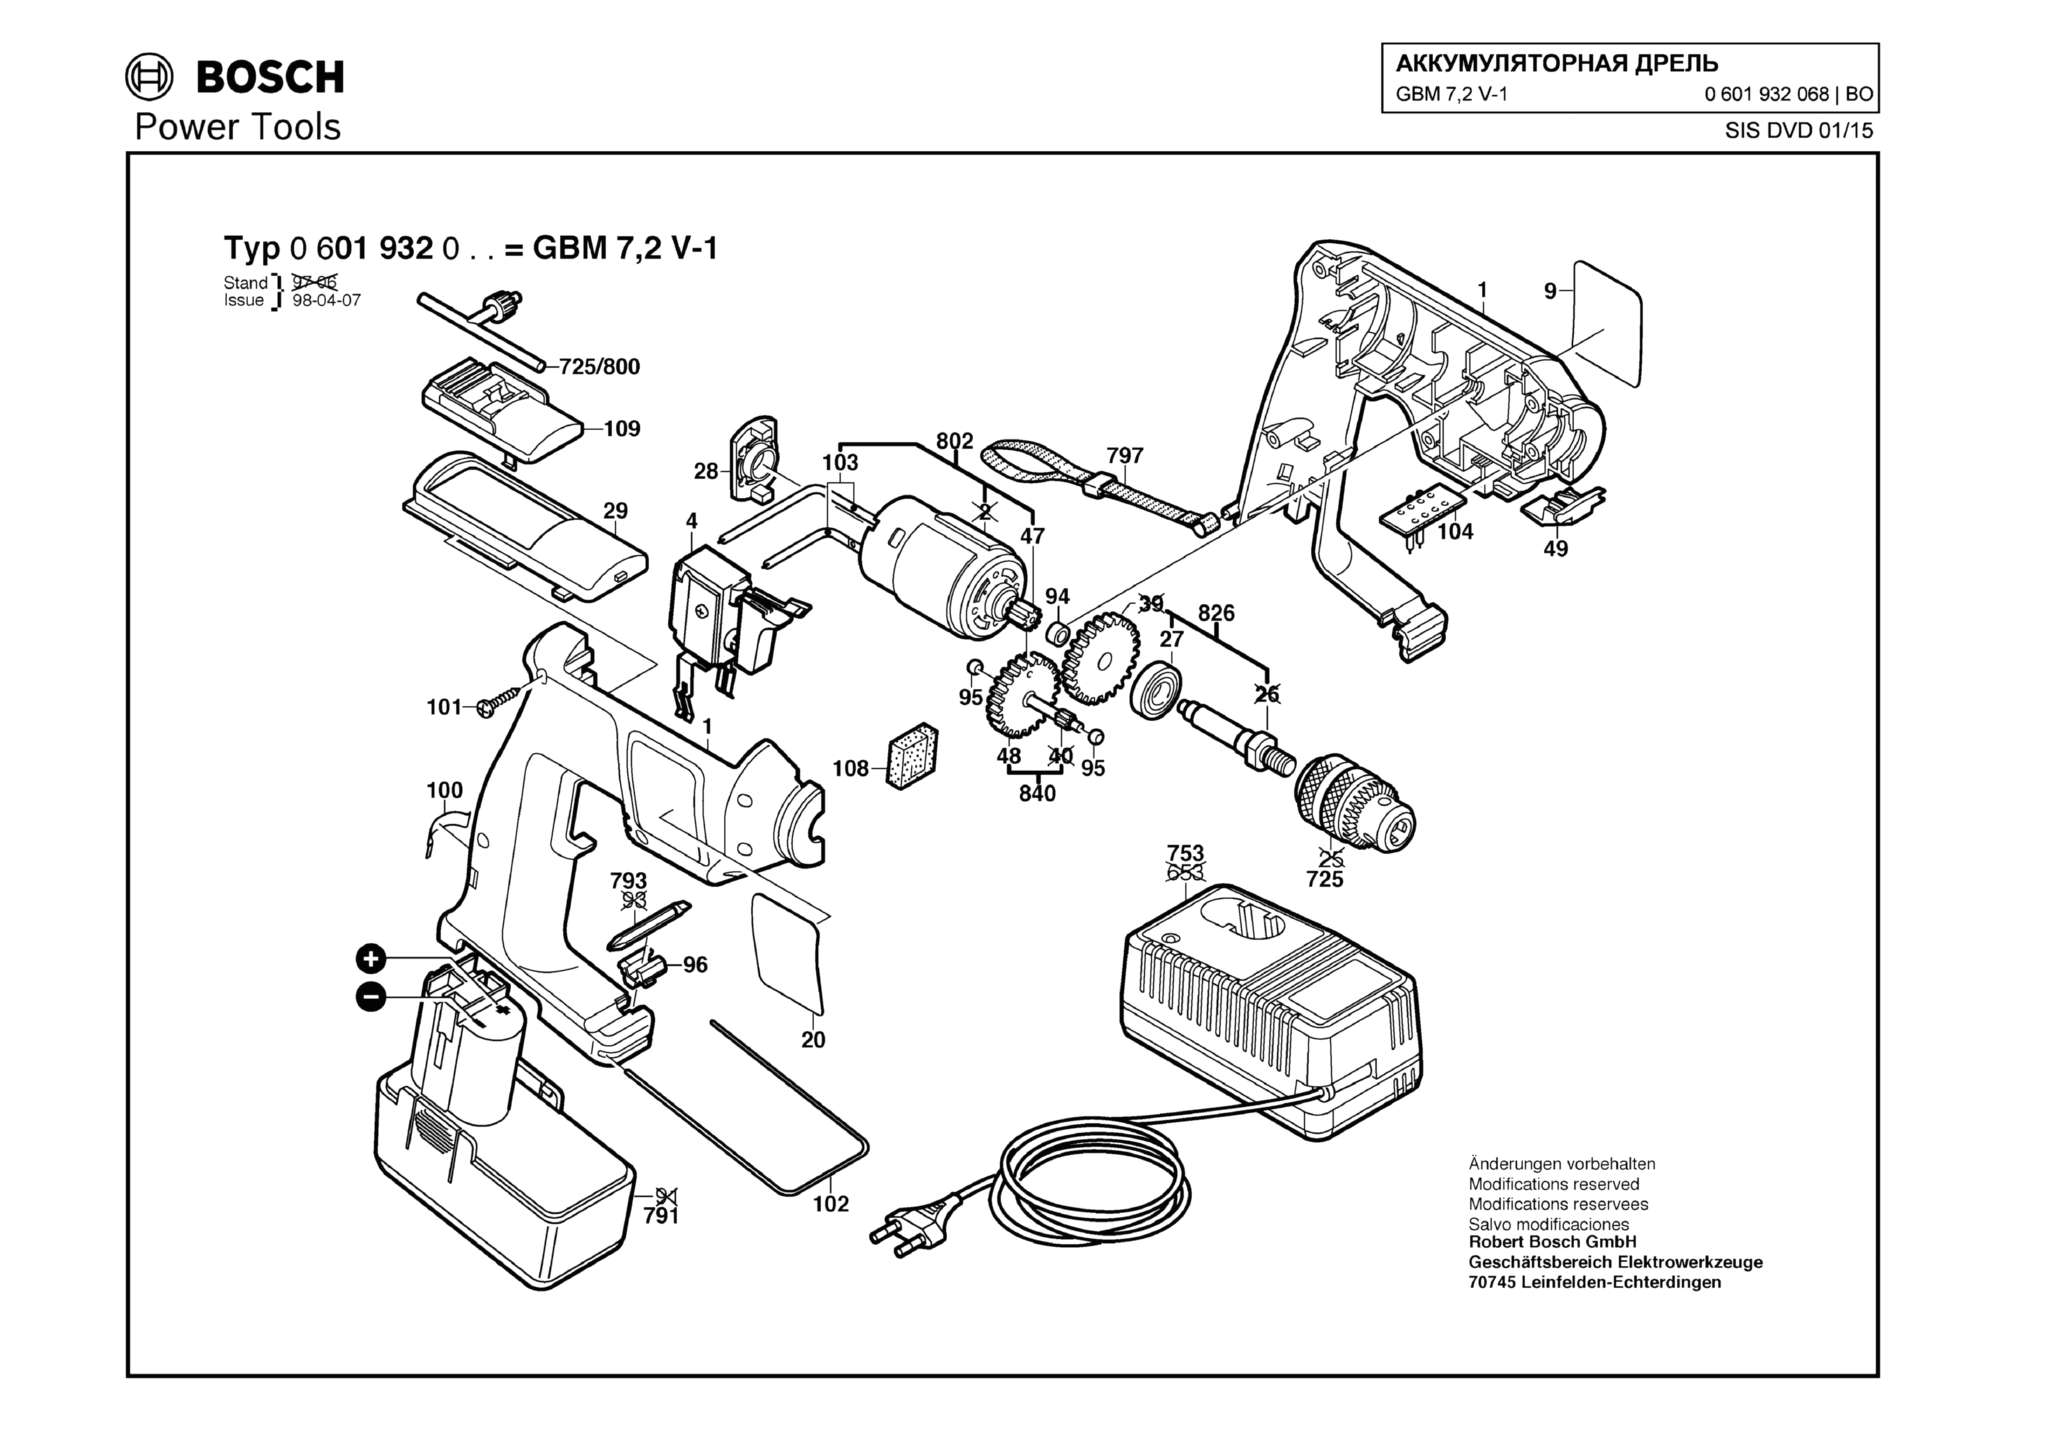 Запчасти, схема и деталировка Bosch GBM 7,2 V-1 (ТИП 0601932068)